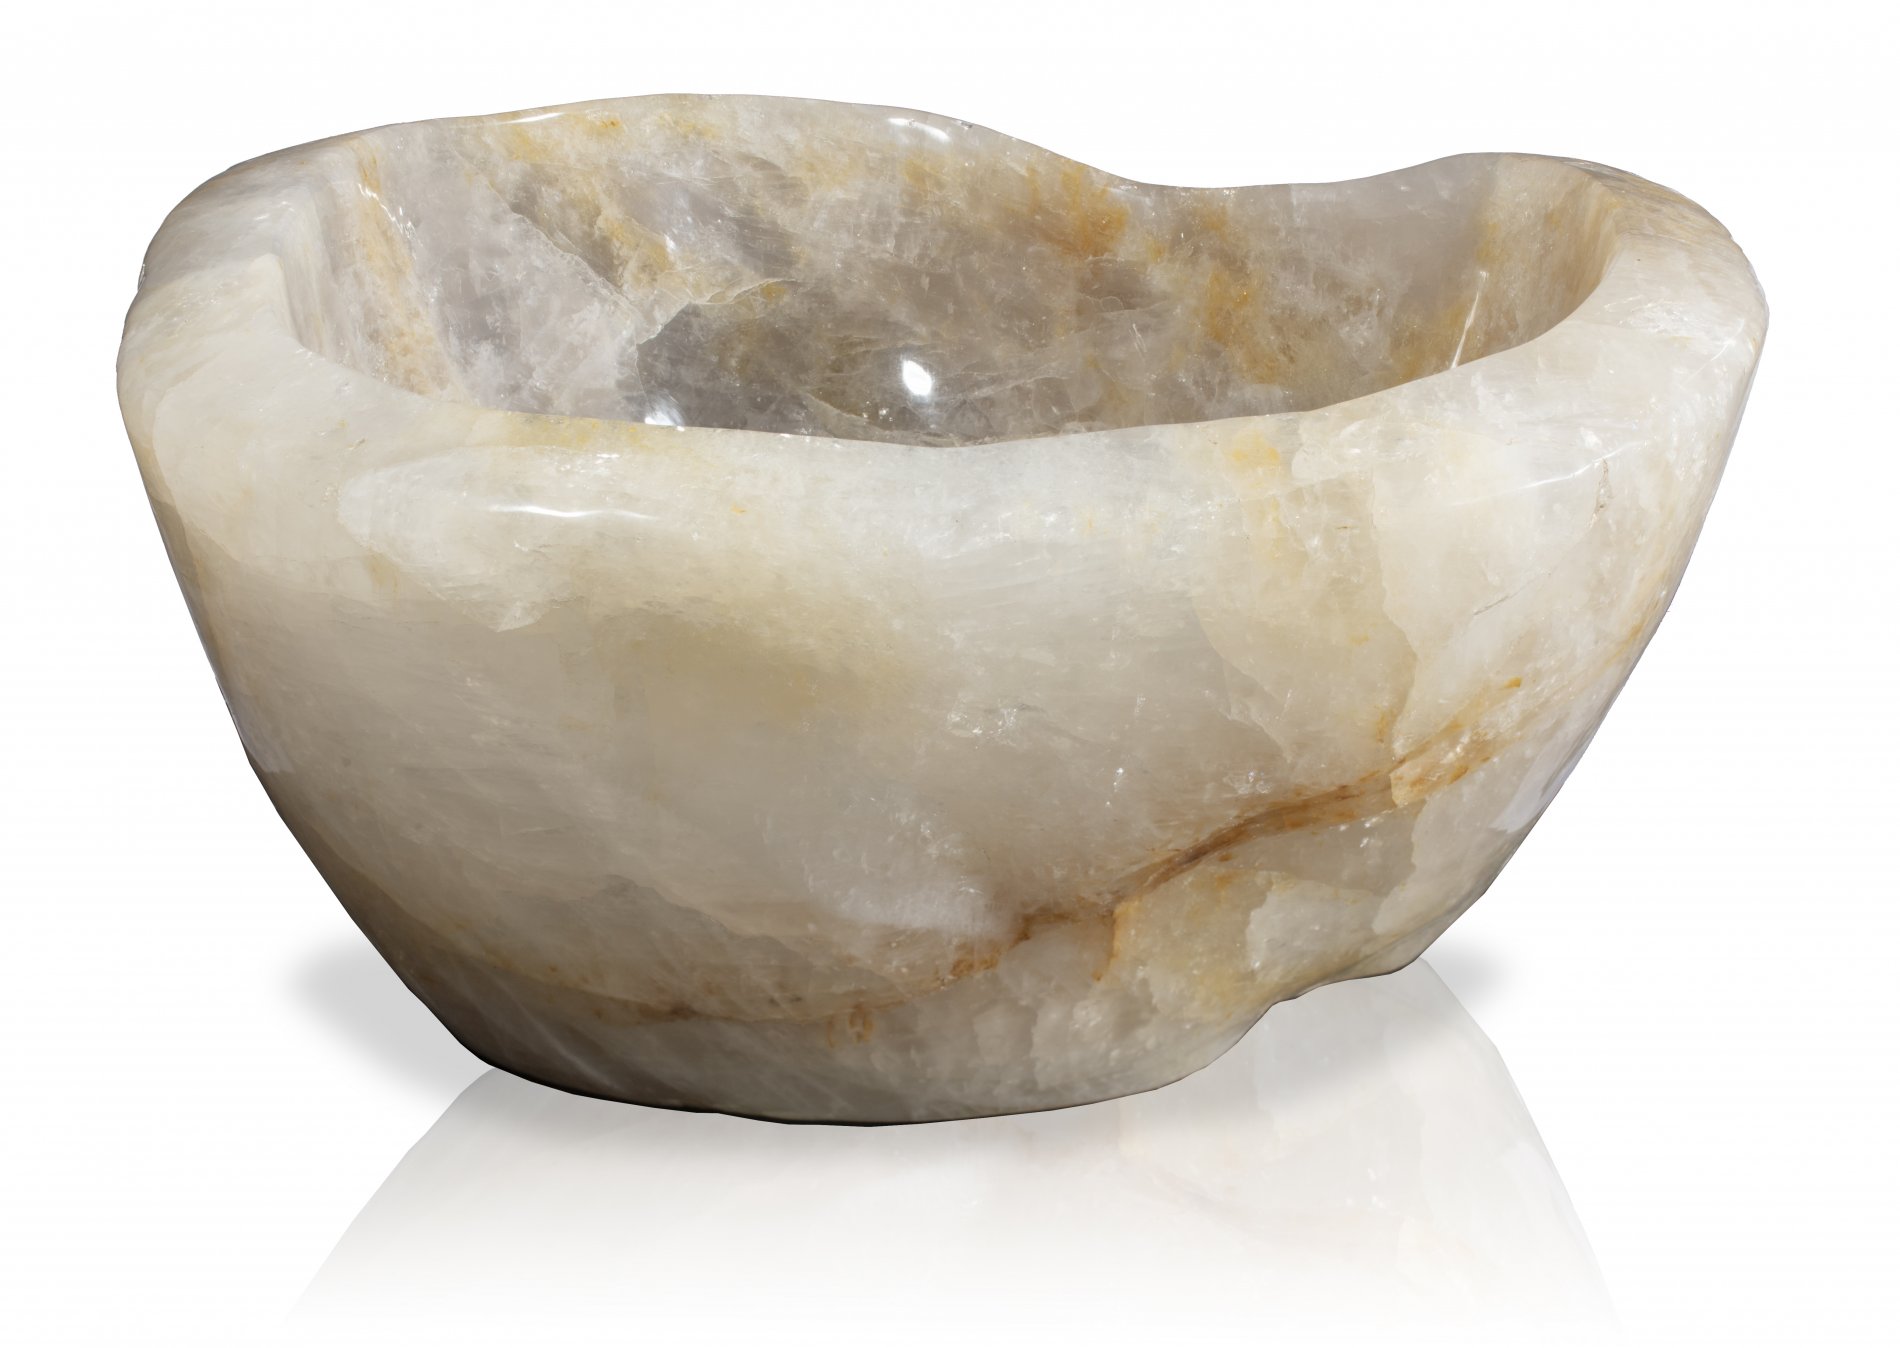 A massive quartz bowl